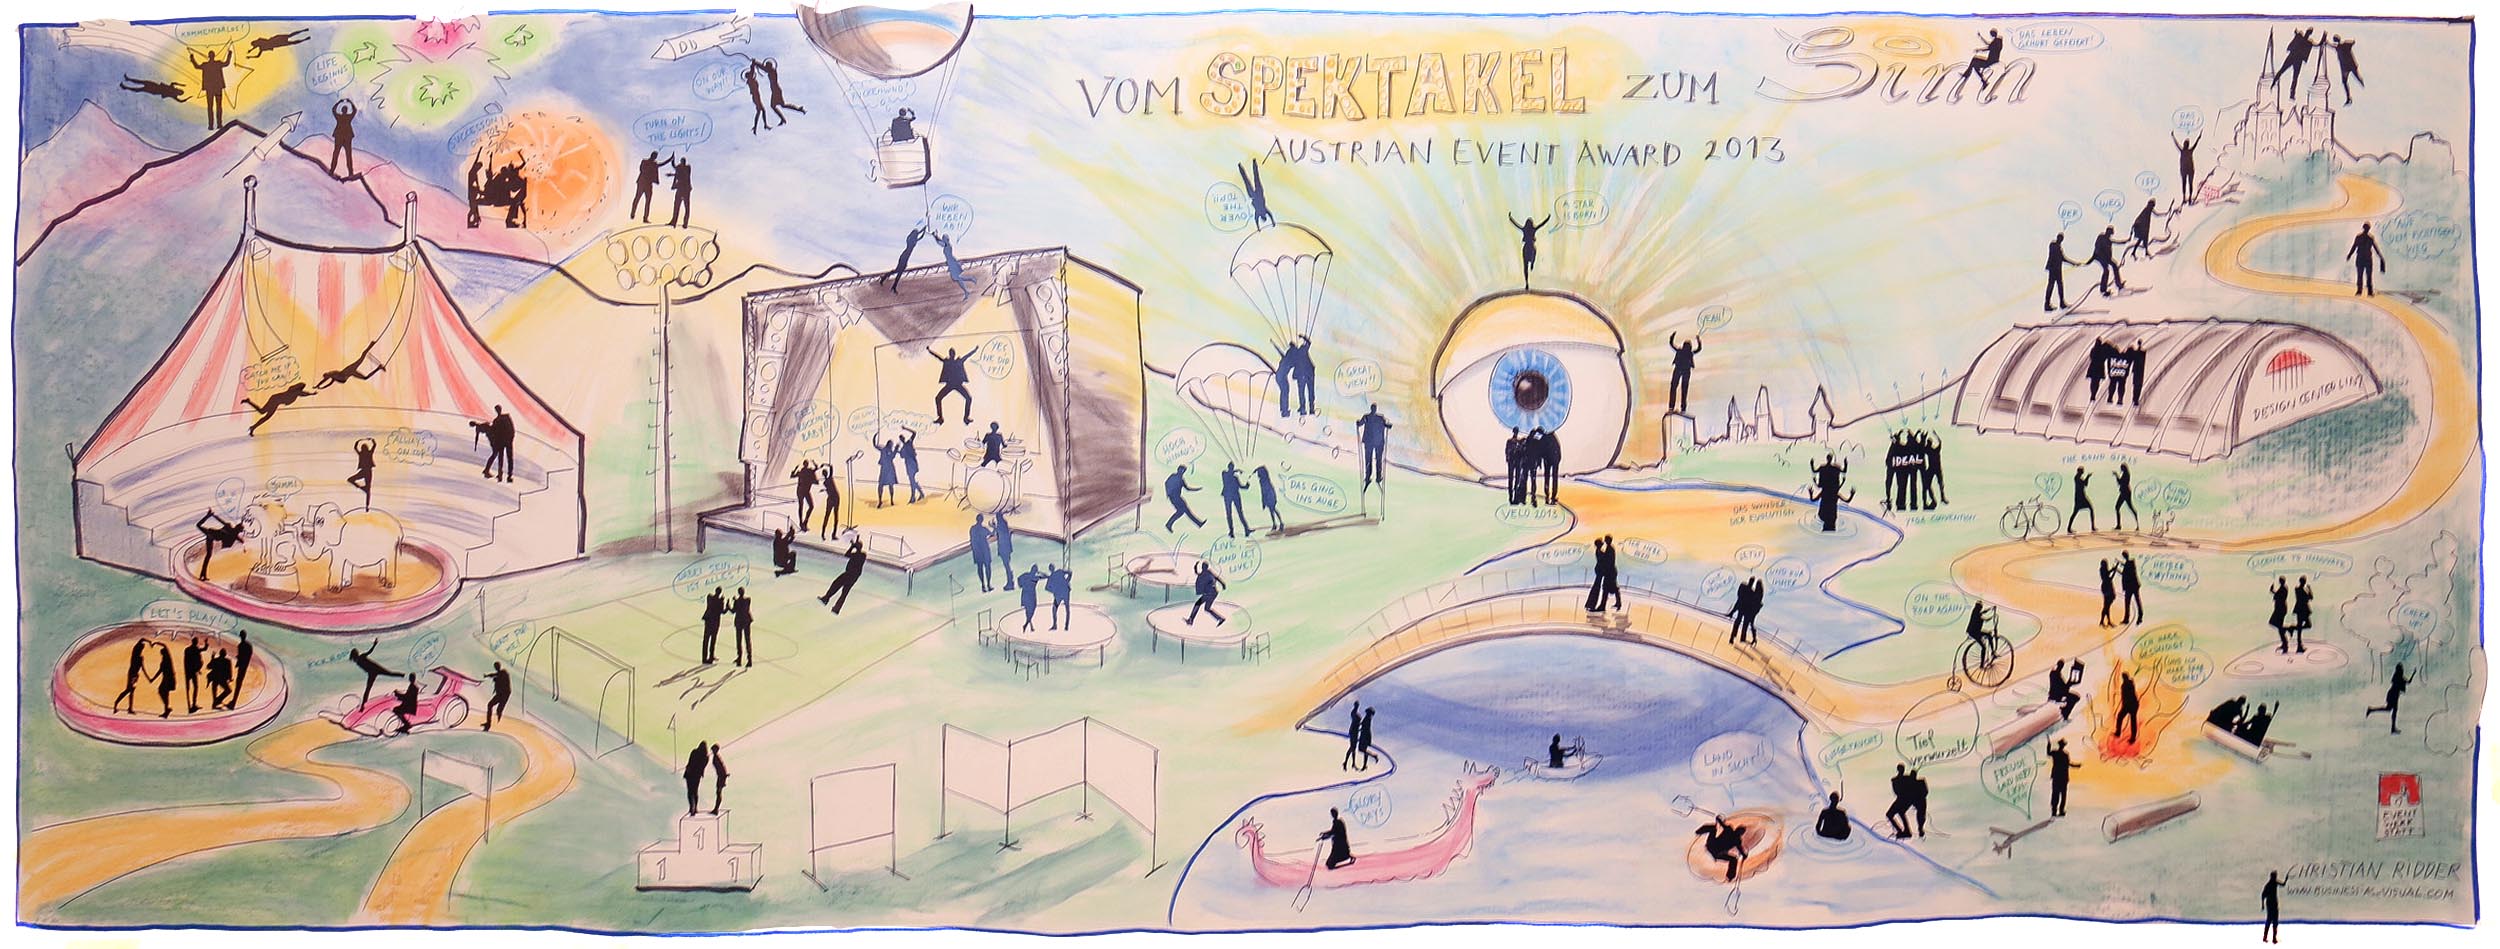 Austrian Event Award 2013. Graphic Recording. Linz. Schattenfiguren. Shadowgramm. Vom Spektakel zum Sinn